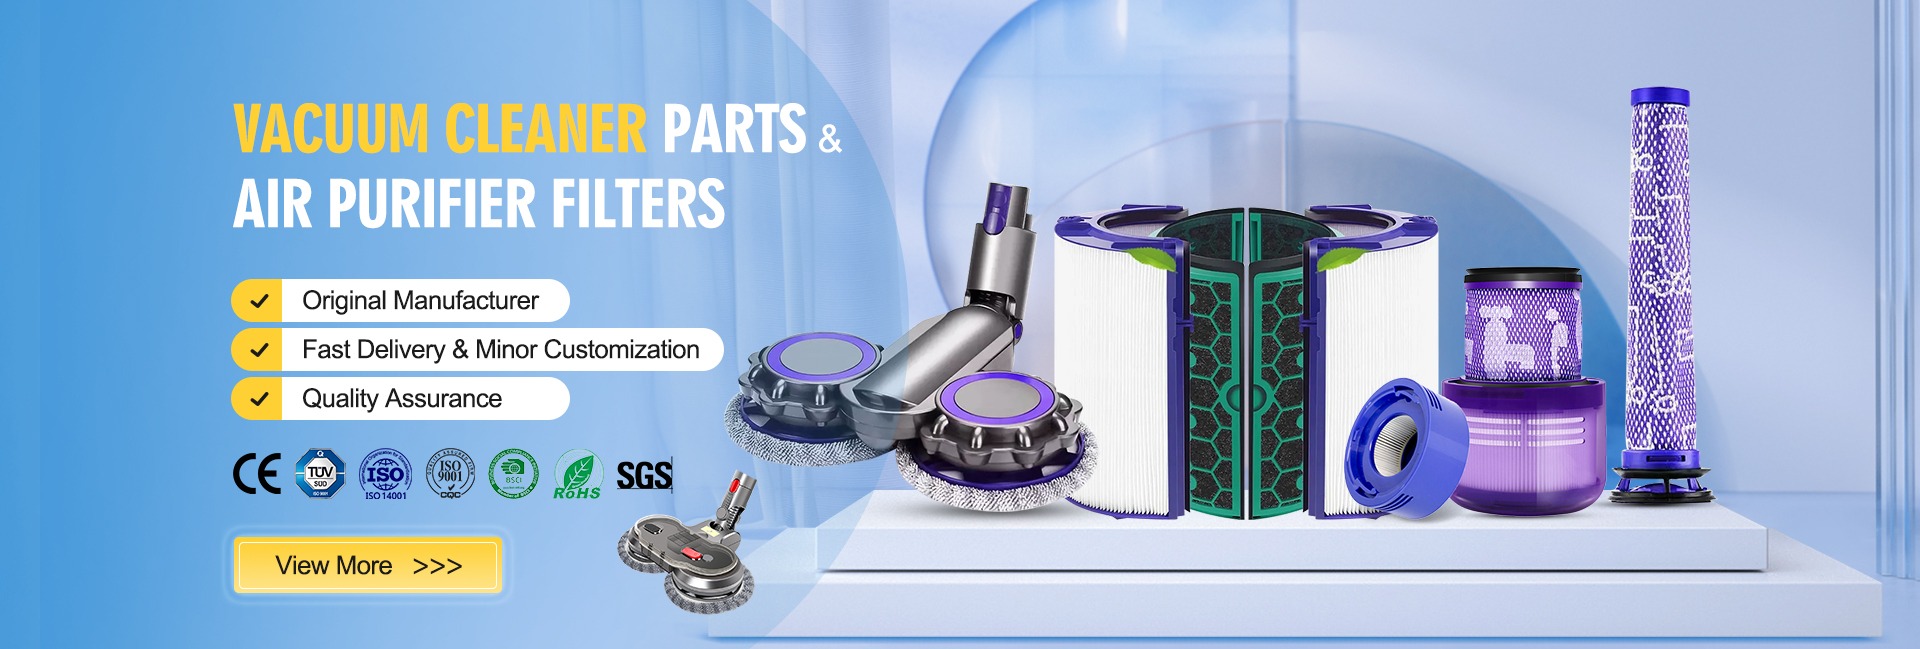 Piezas de aspiradora y filtros purificadores de aire